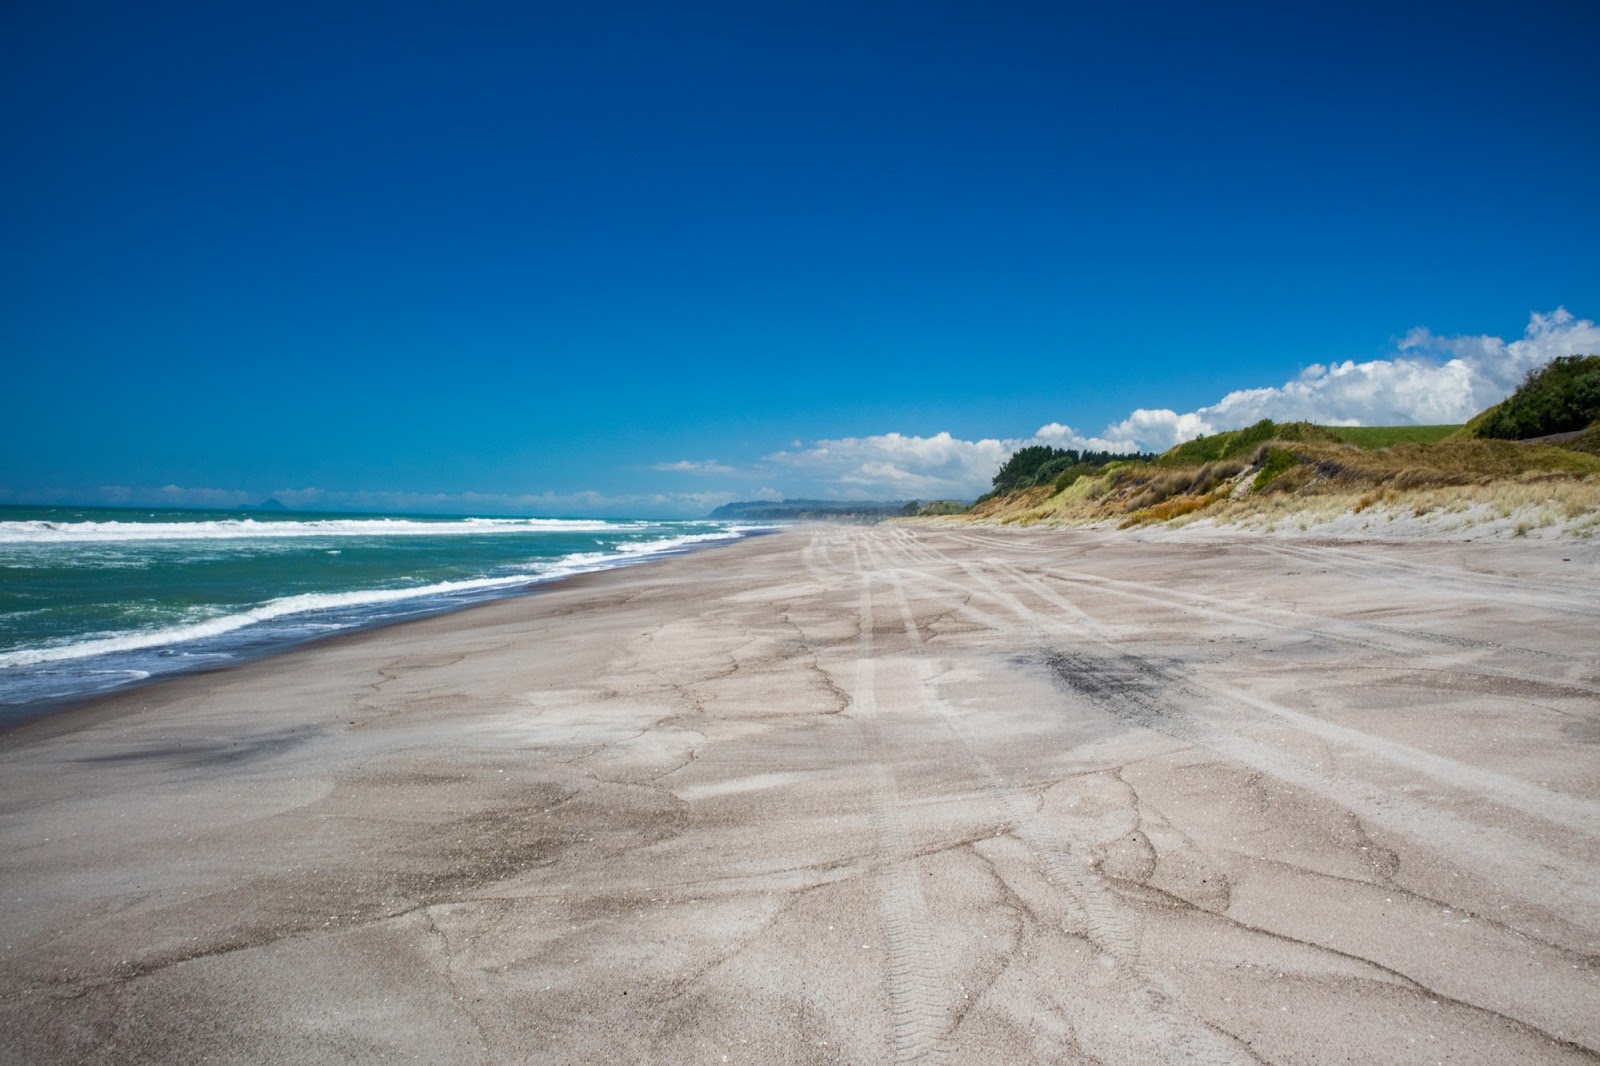 Zdjęcie Otamarakau Beach Access z powierzchnią jasny piasek